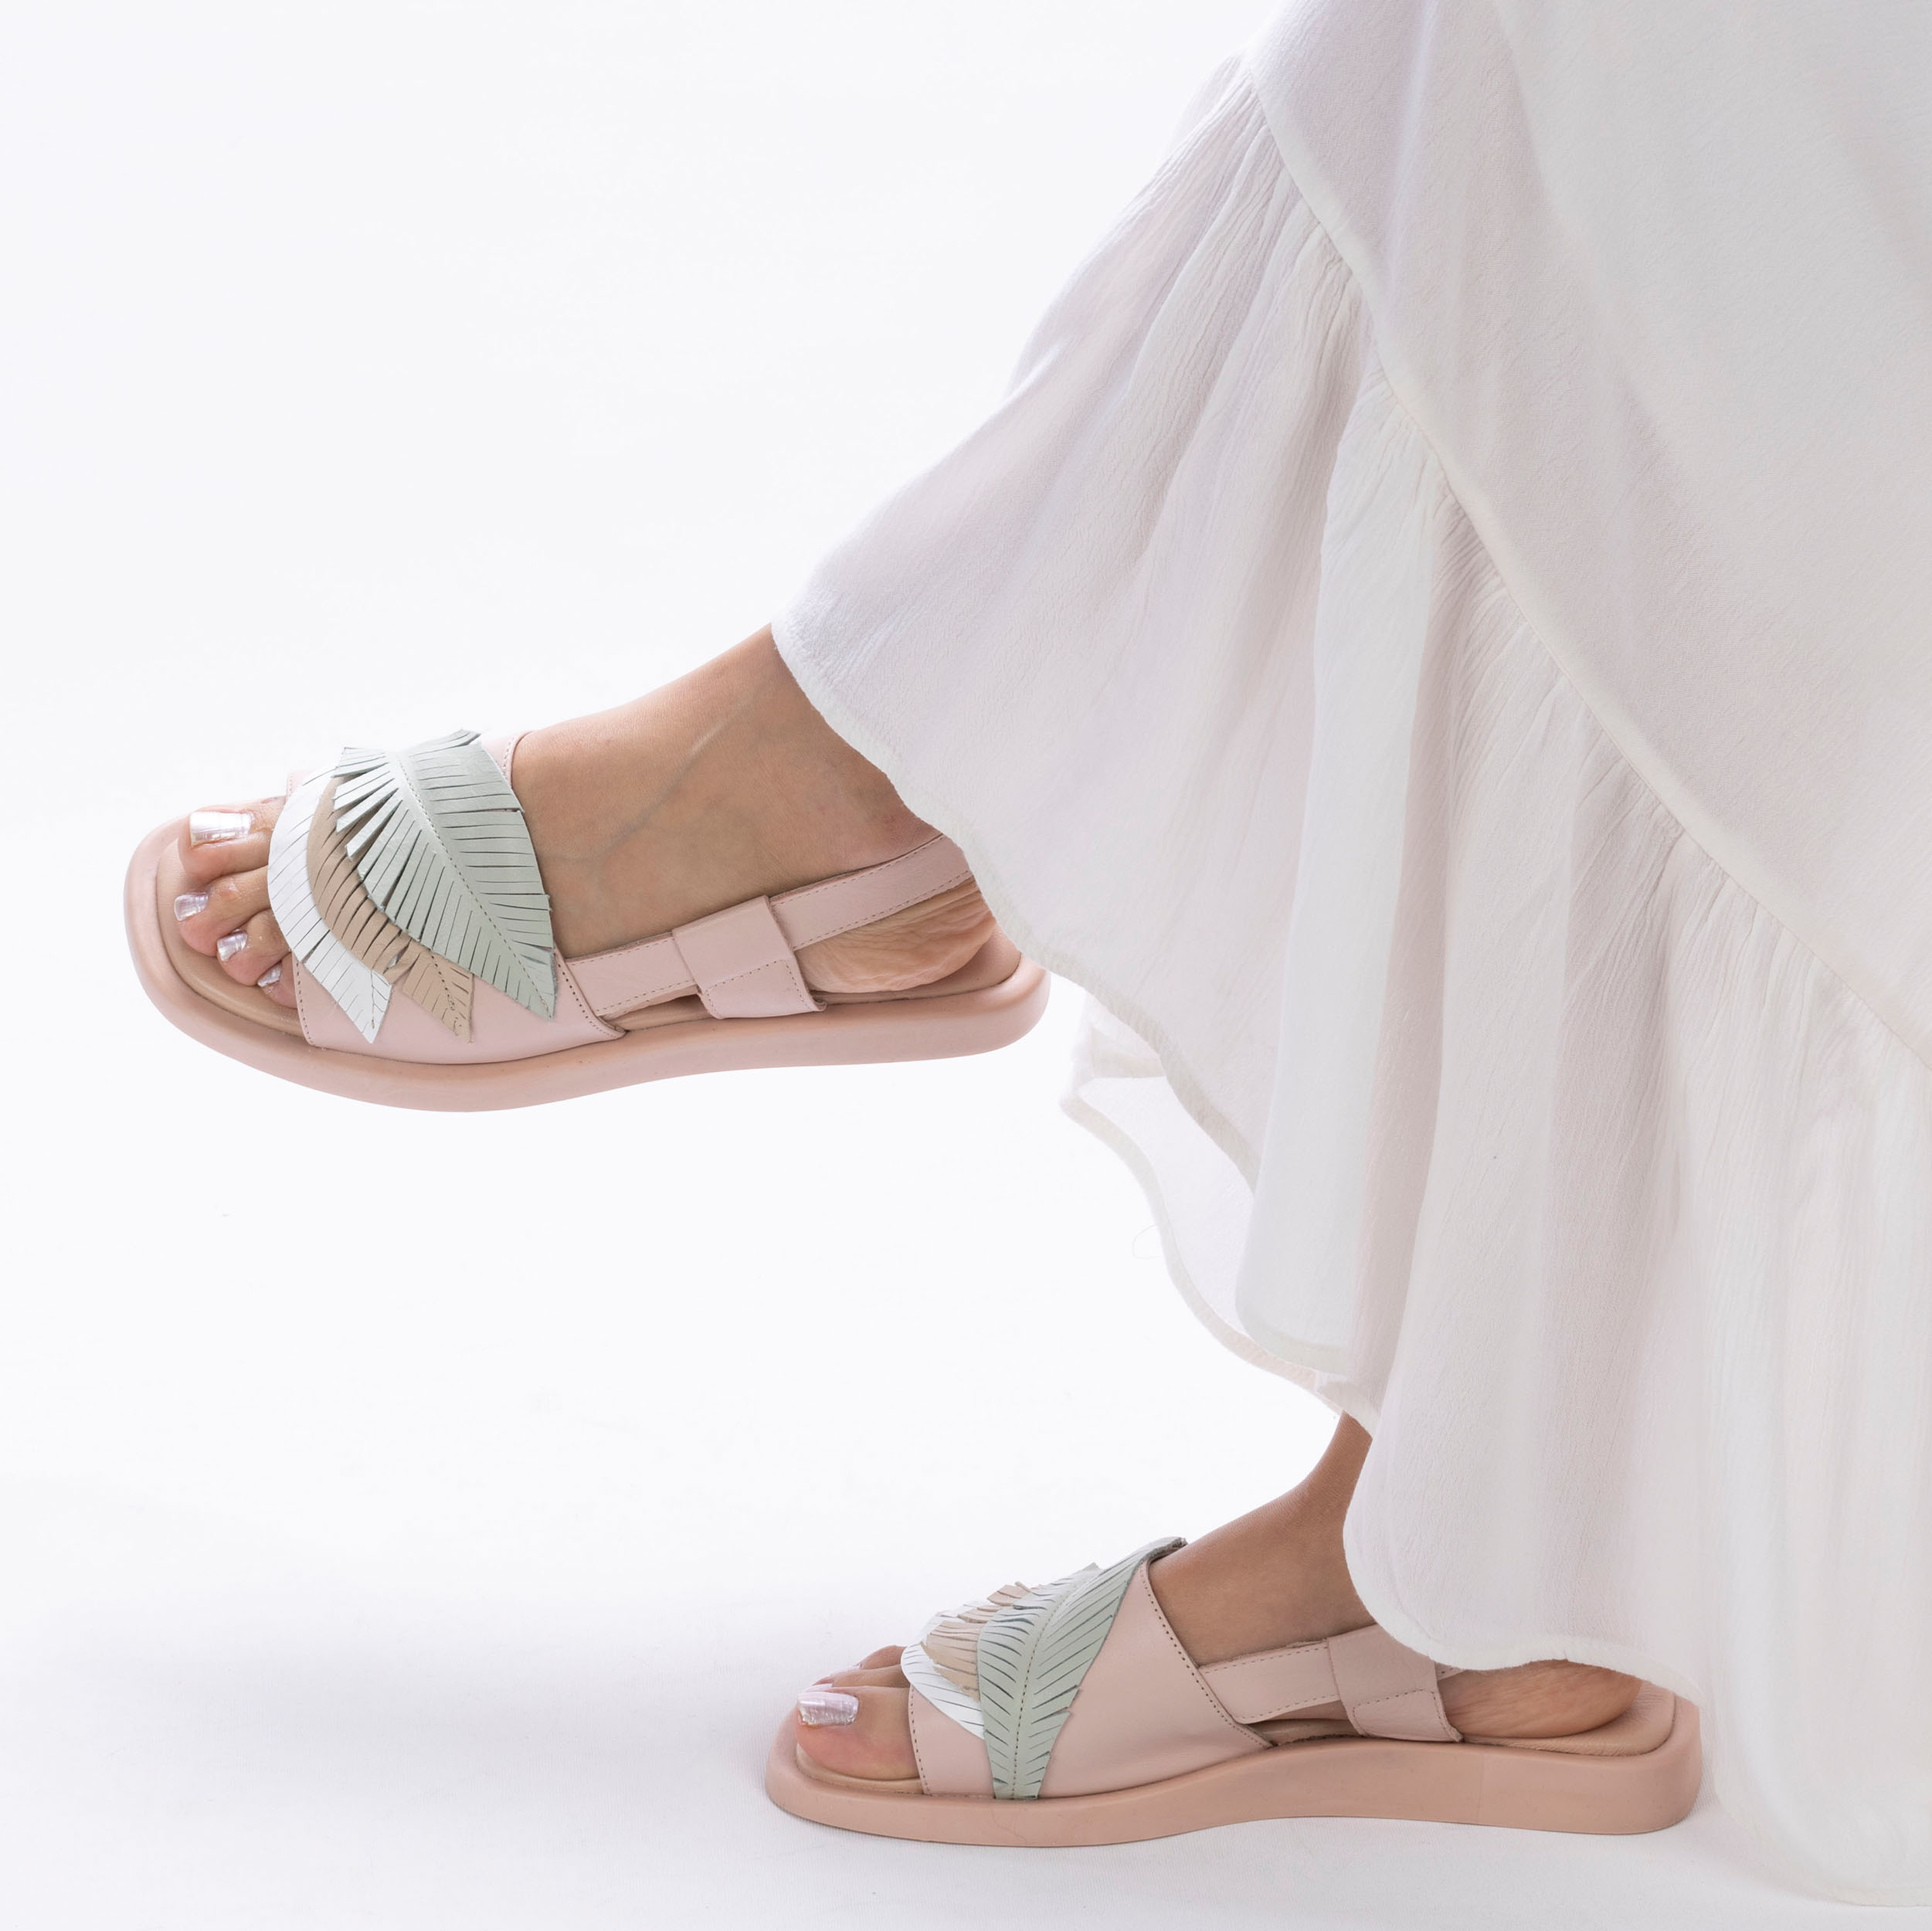 Kadın Hakiki Deri Günlük Ultra Rahat Tasarım Sandalet, Renk: Pudra, Beden: 36